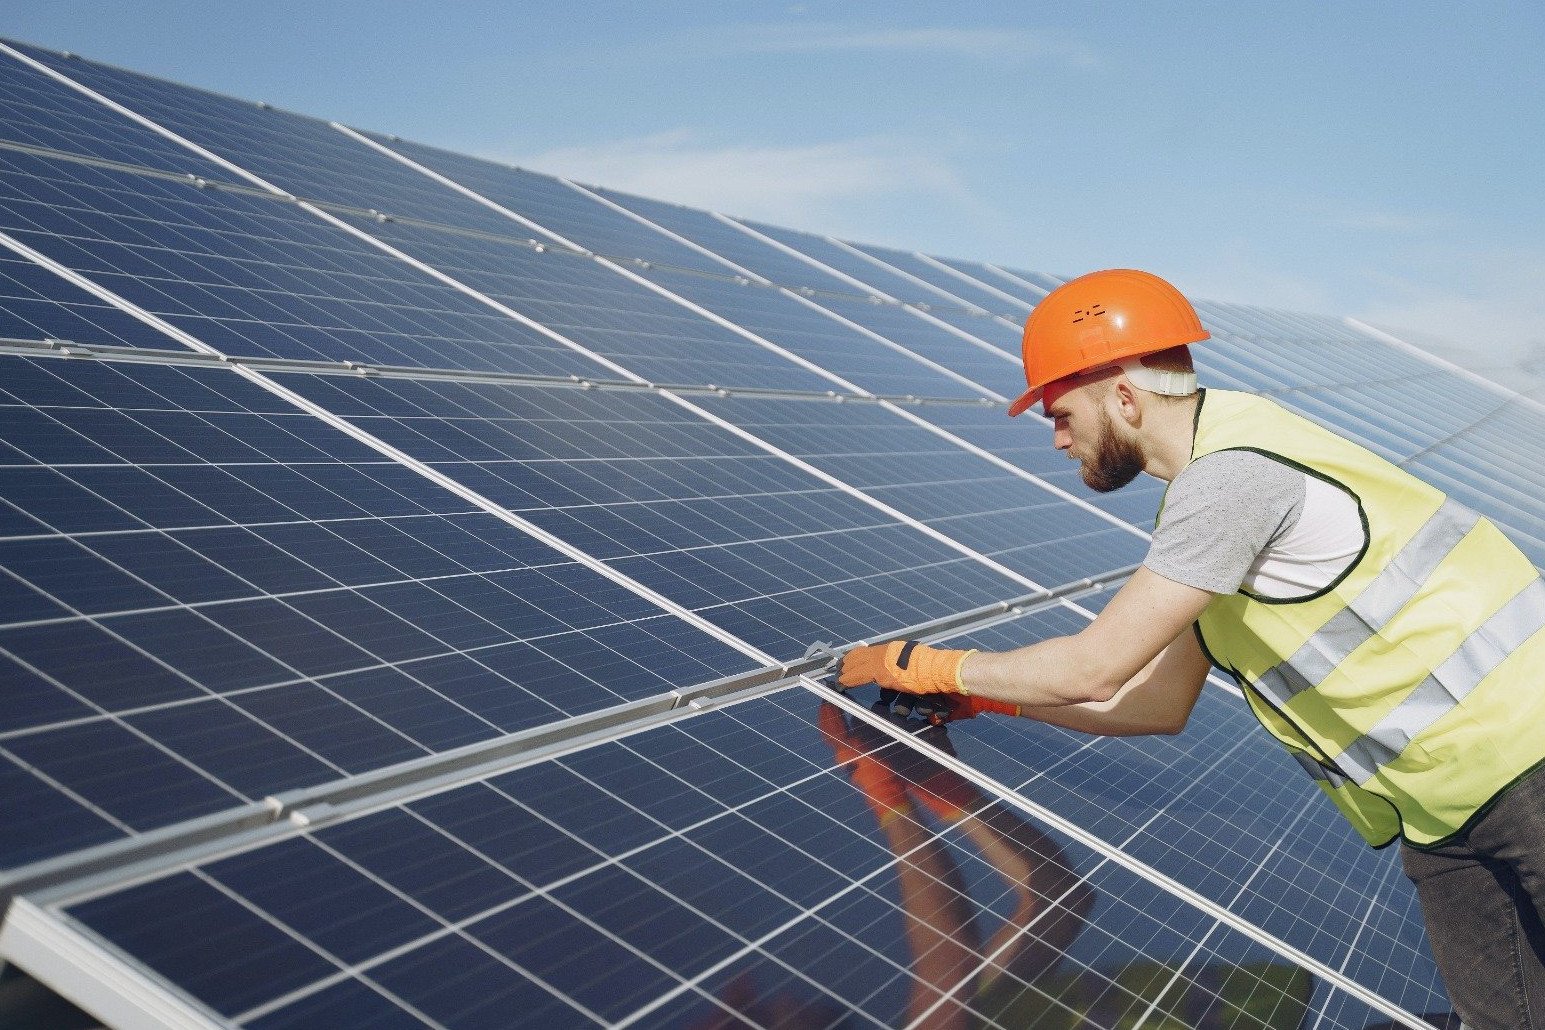 ¿Cuál es el principal problema para tener placas fotovoltaicas? Faltan instaladores